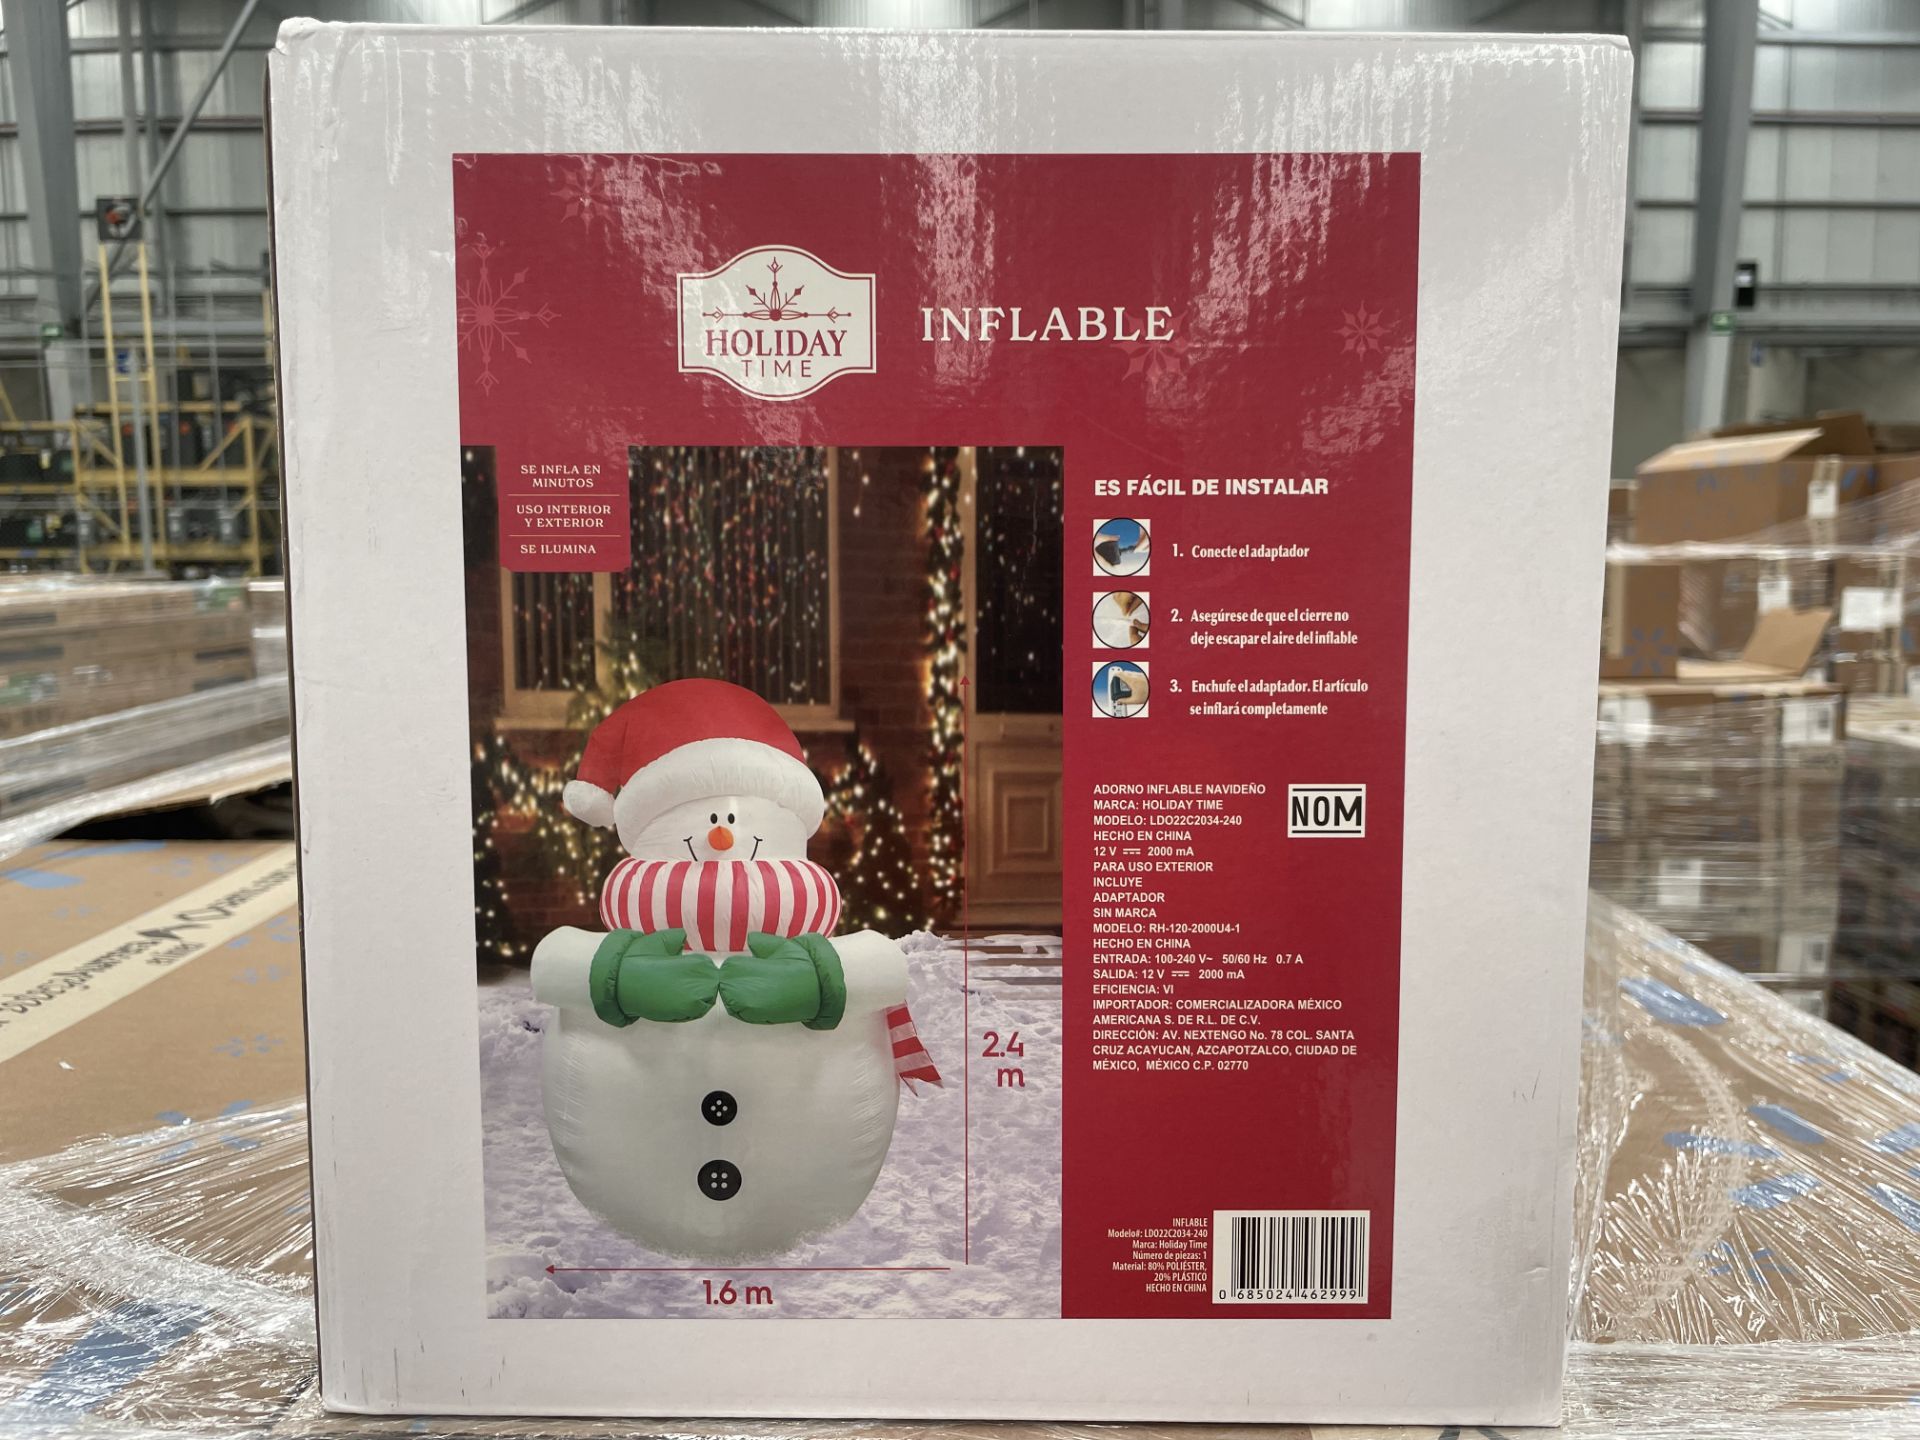 (Nuevo) Lote conformado por 13 Inflables con iluminación de muñeco de nieve, marca Holiday Time, 2.